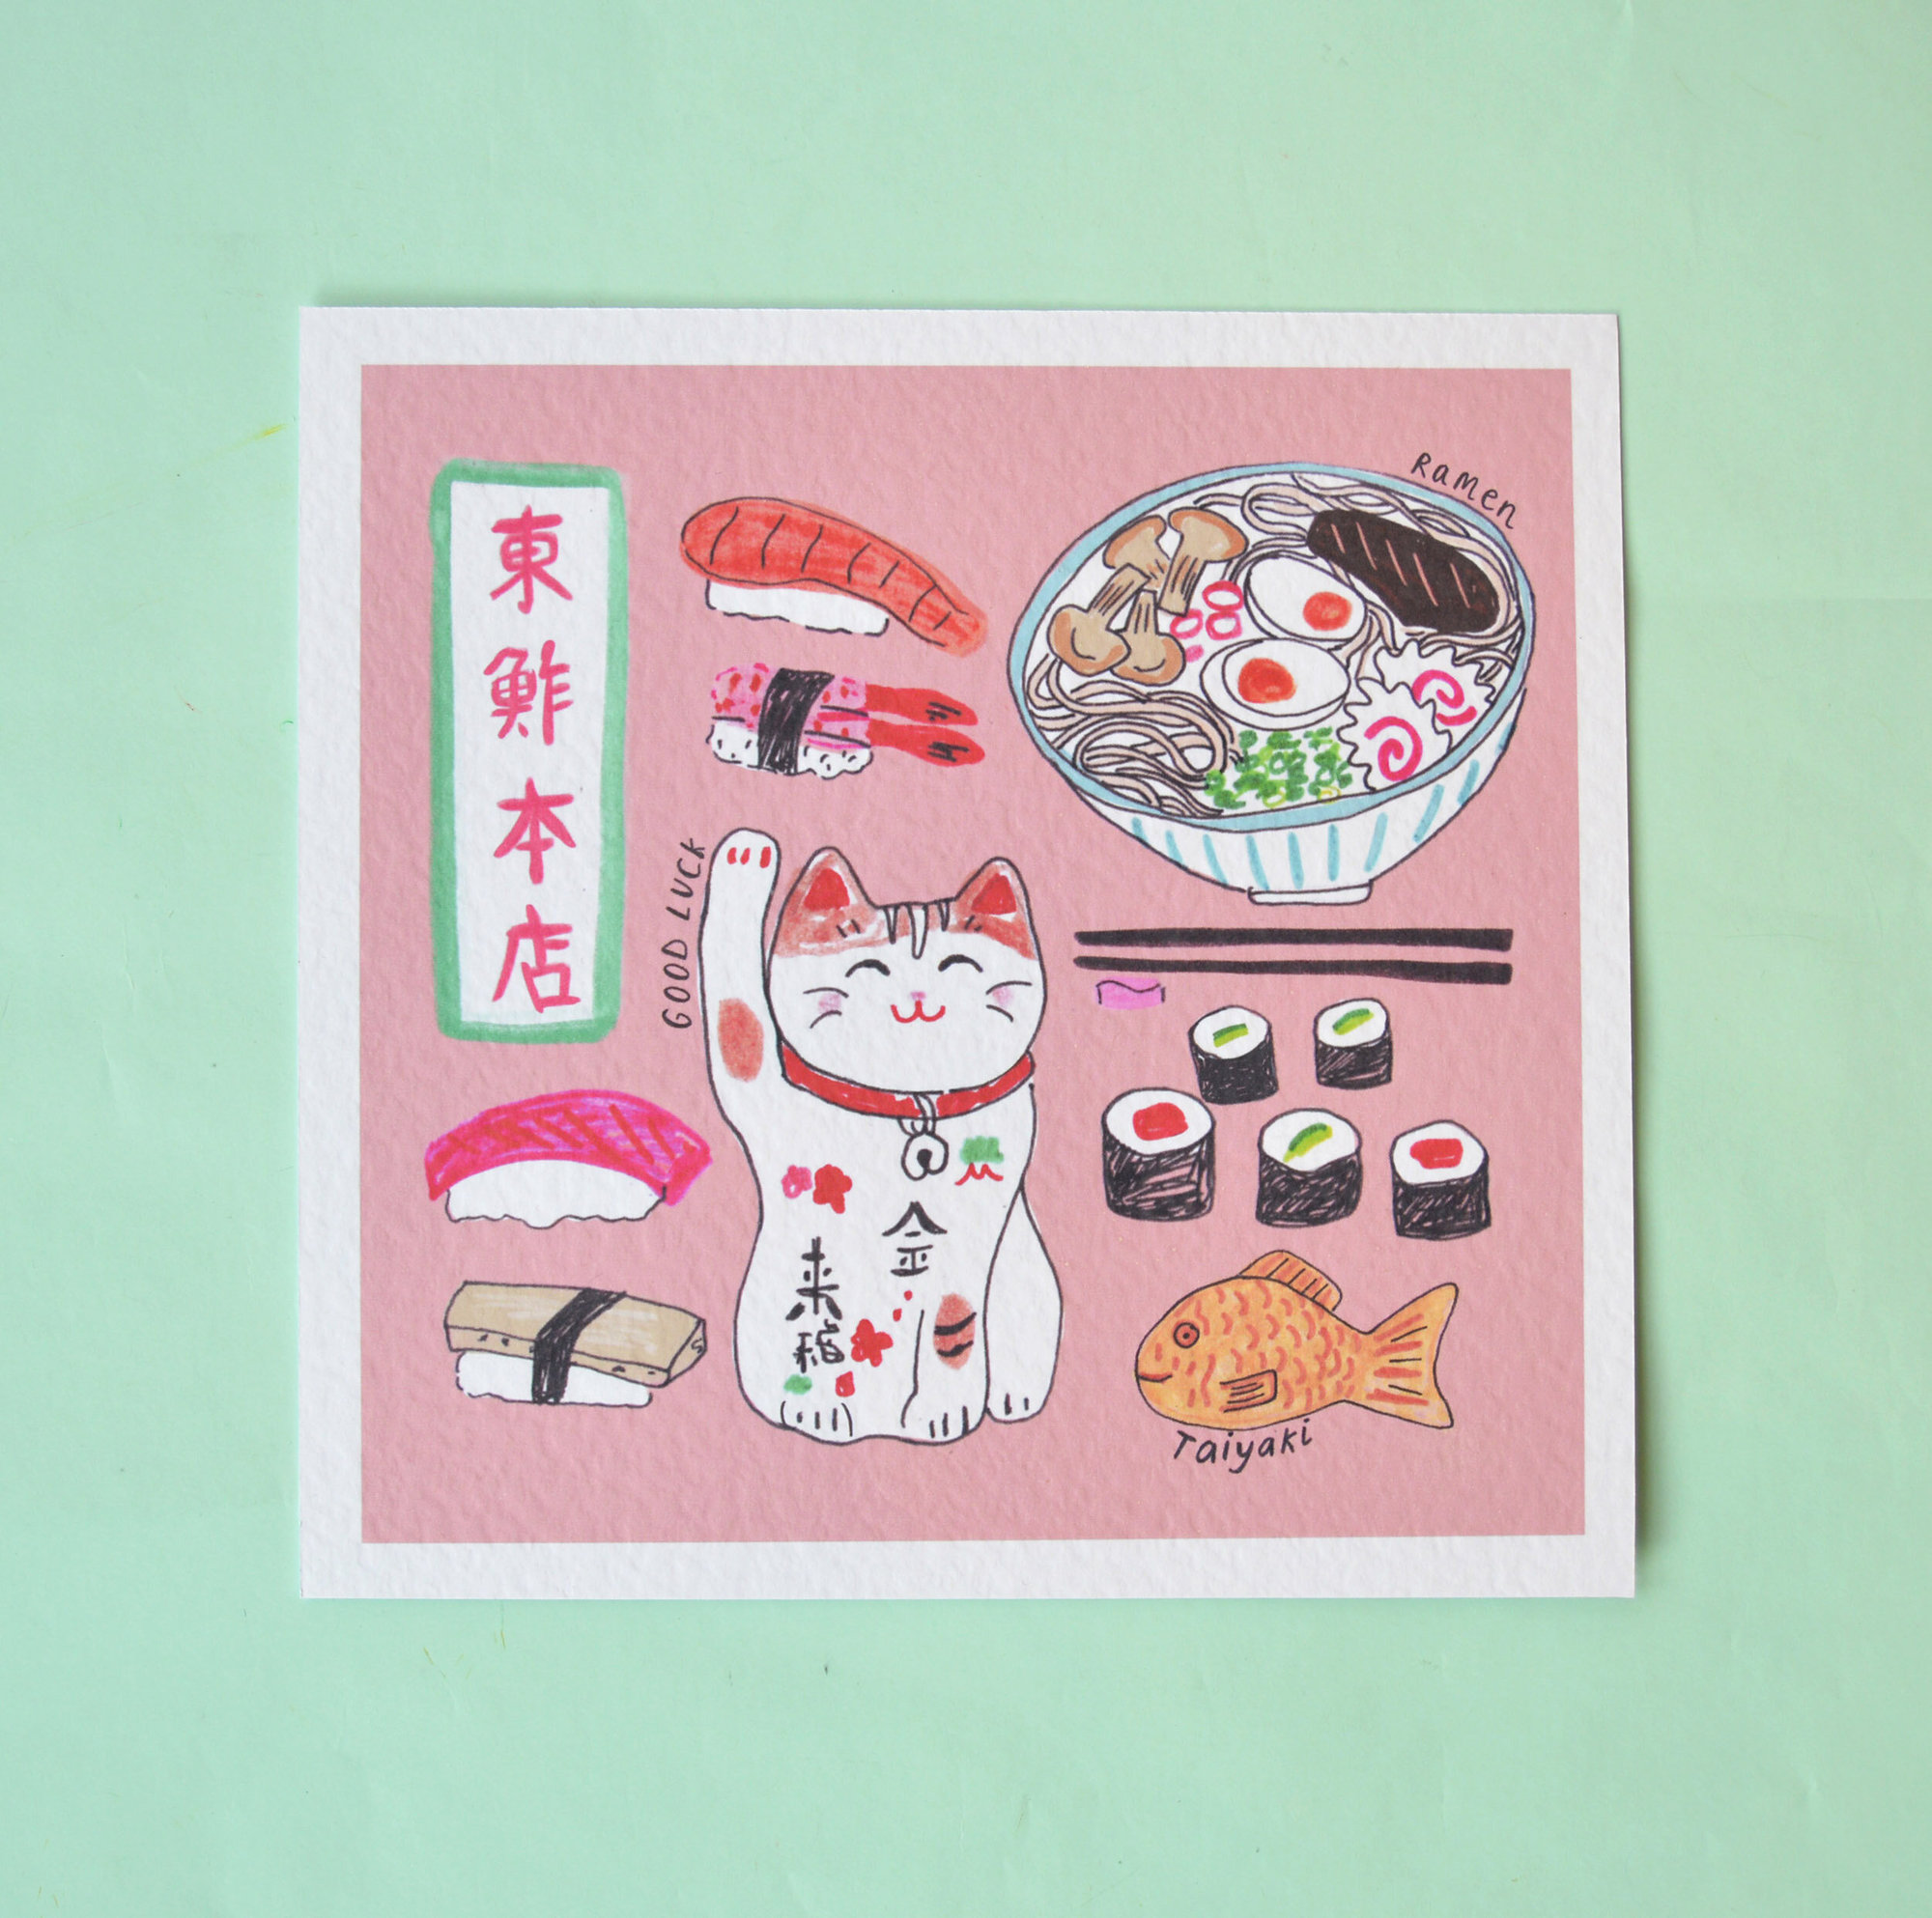 Ramen And Lucky Cat Art Print - Small (21cm x 21cm)